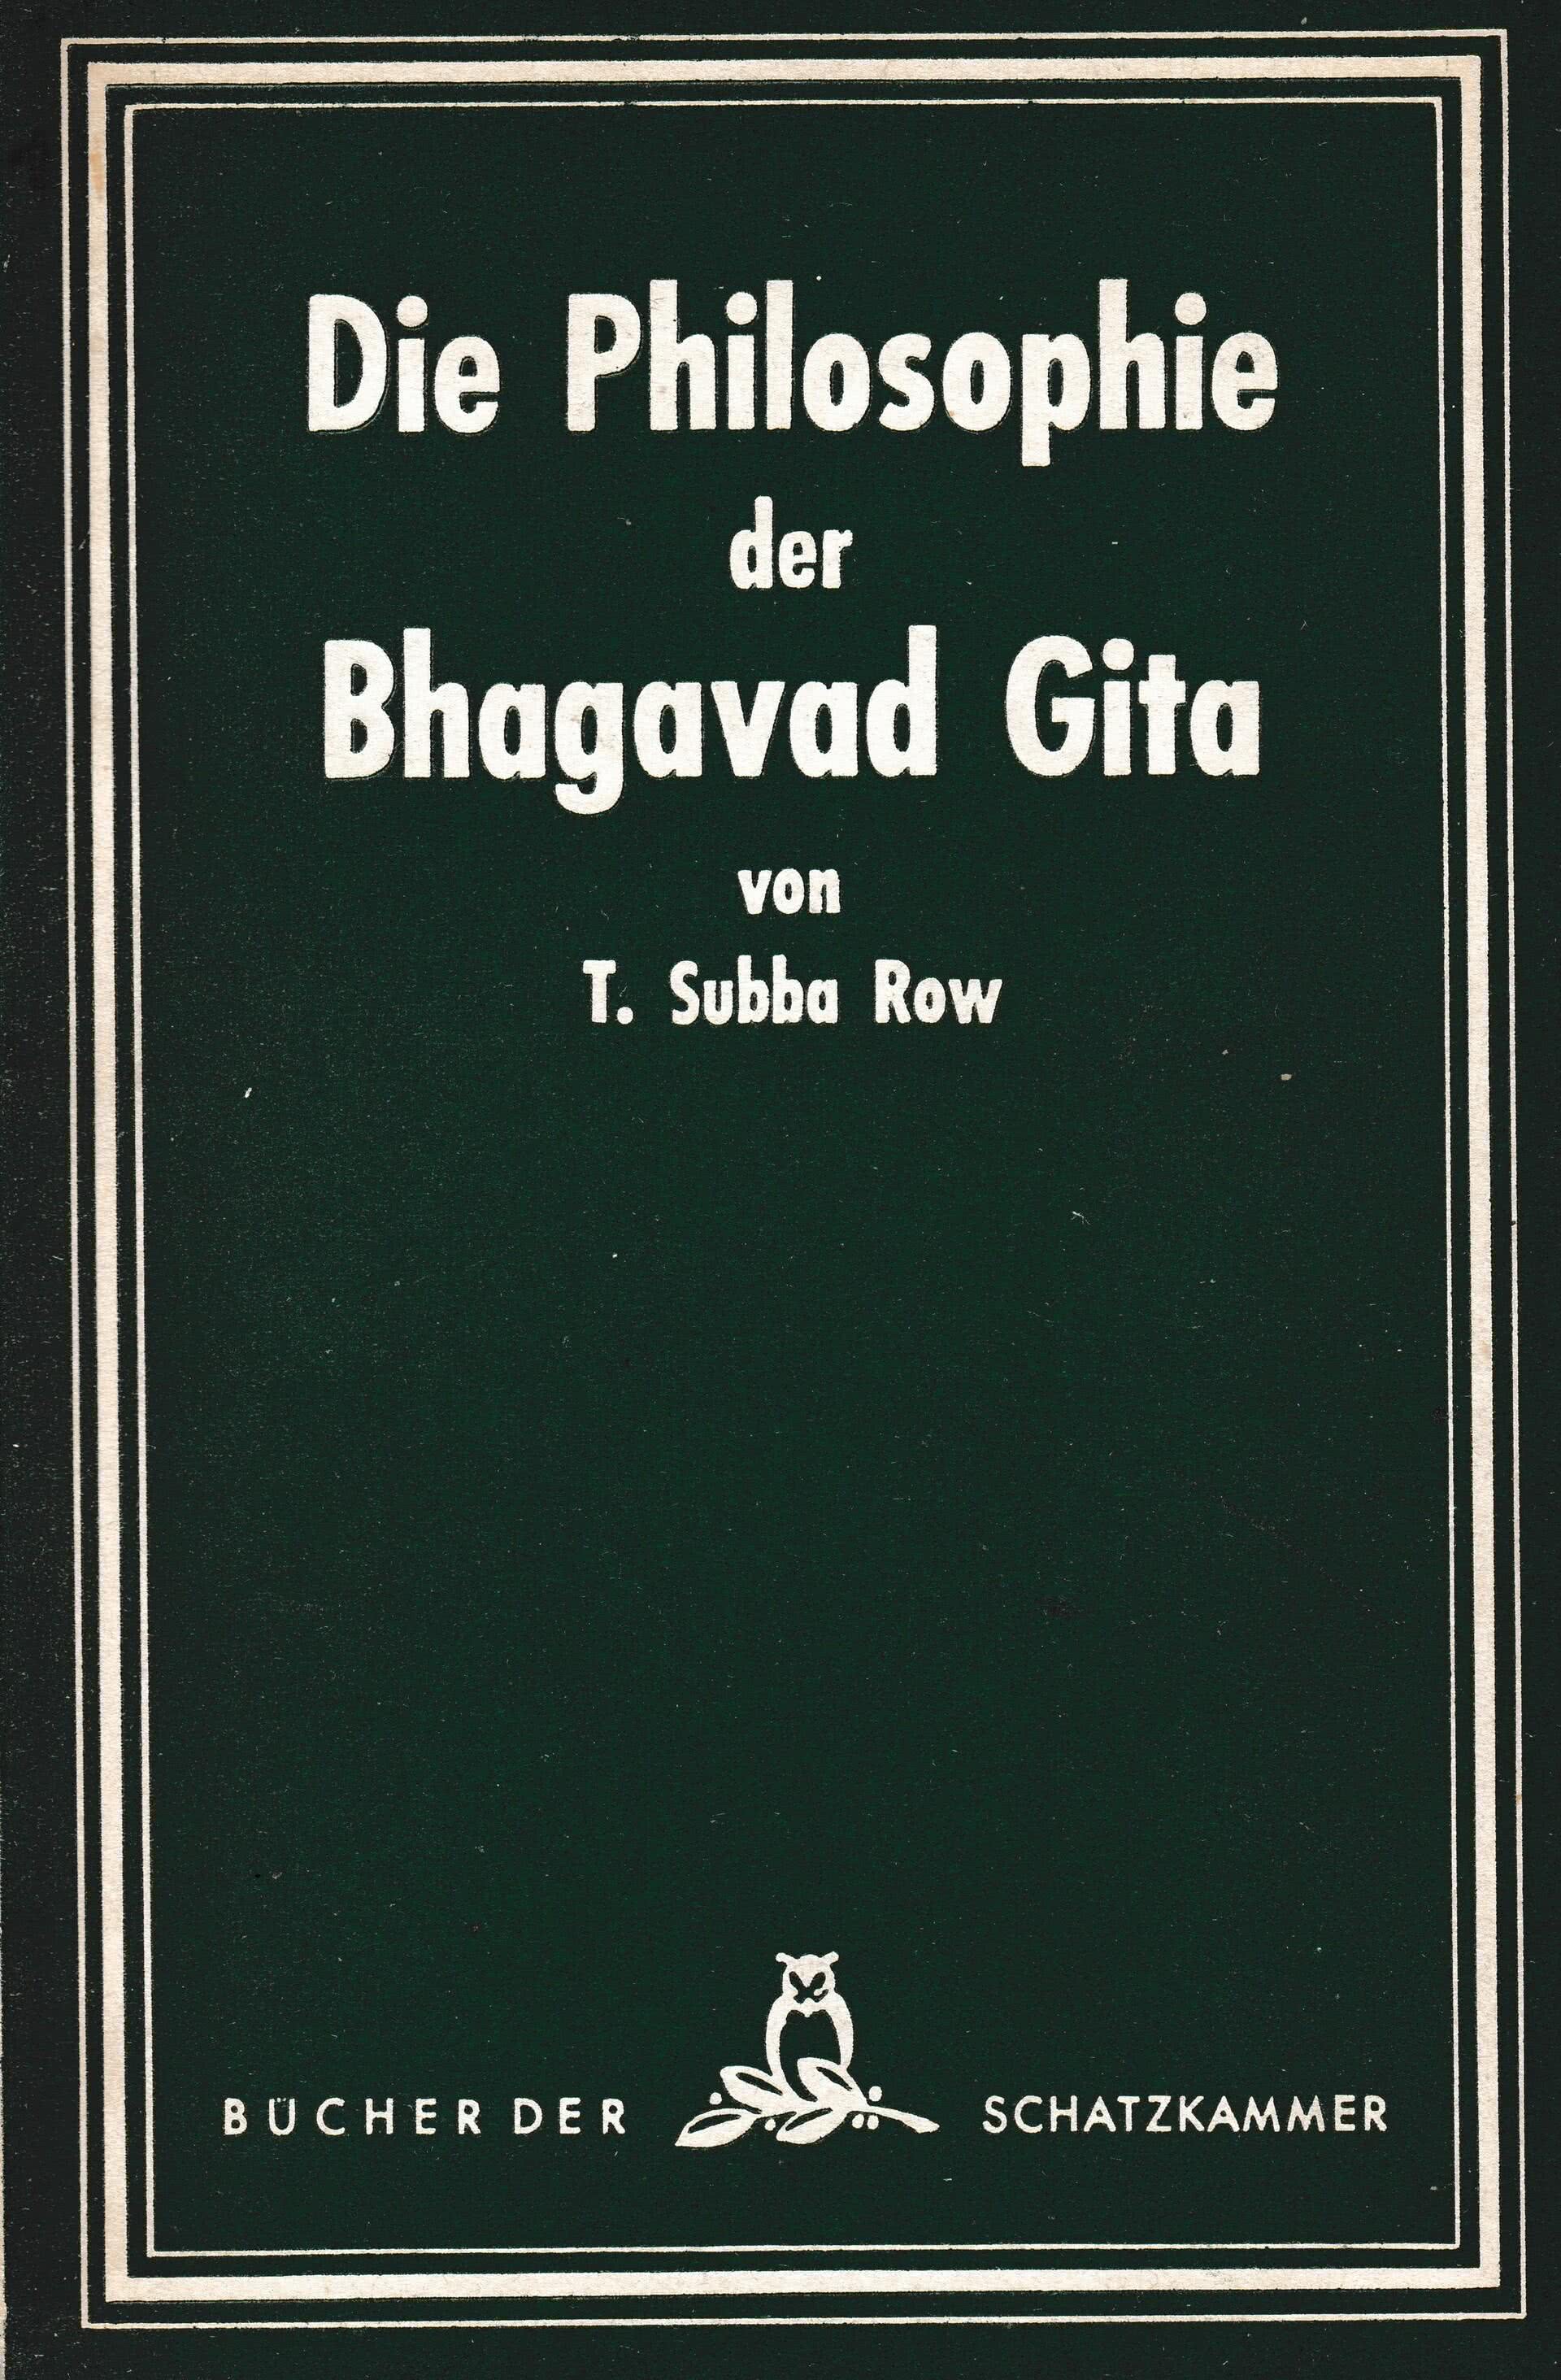 Die Philosophie der Bhagavad Gita